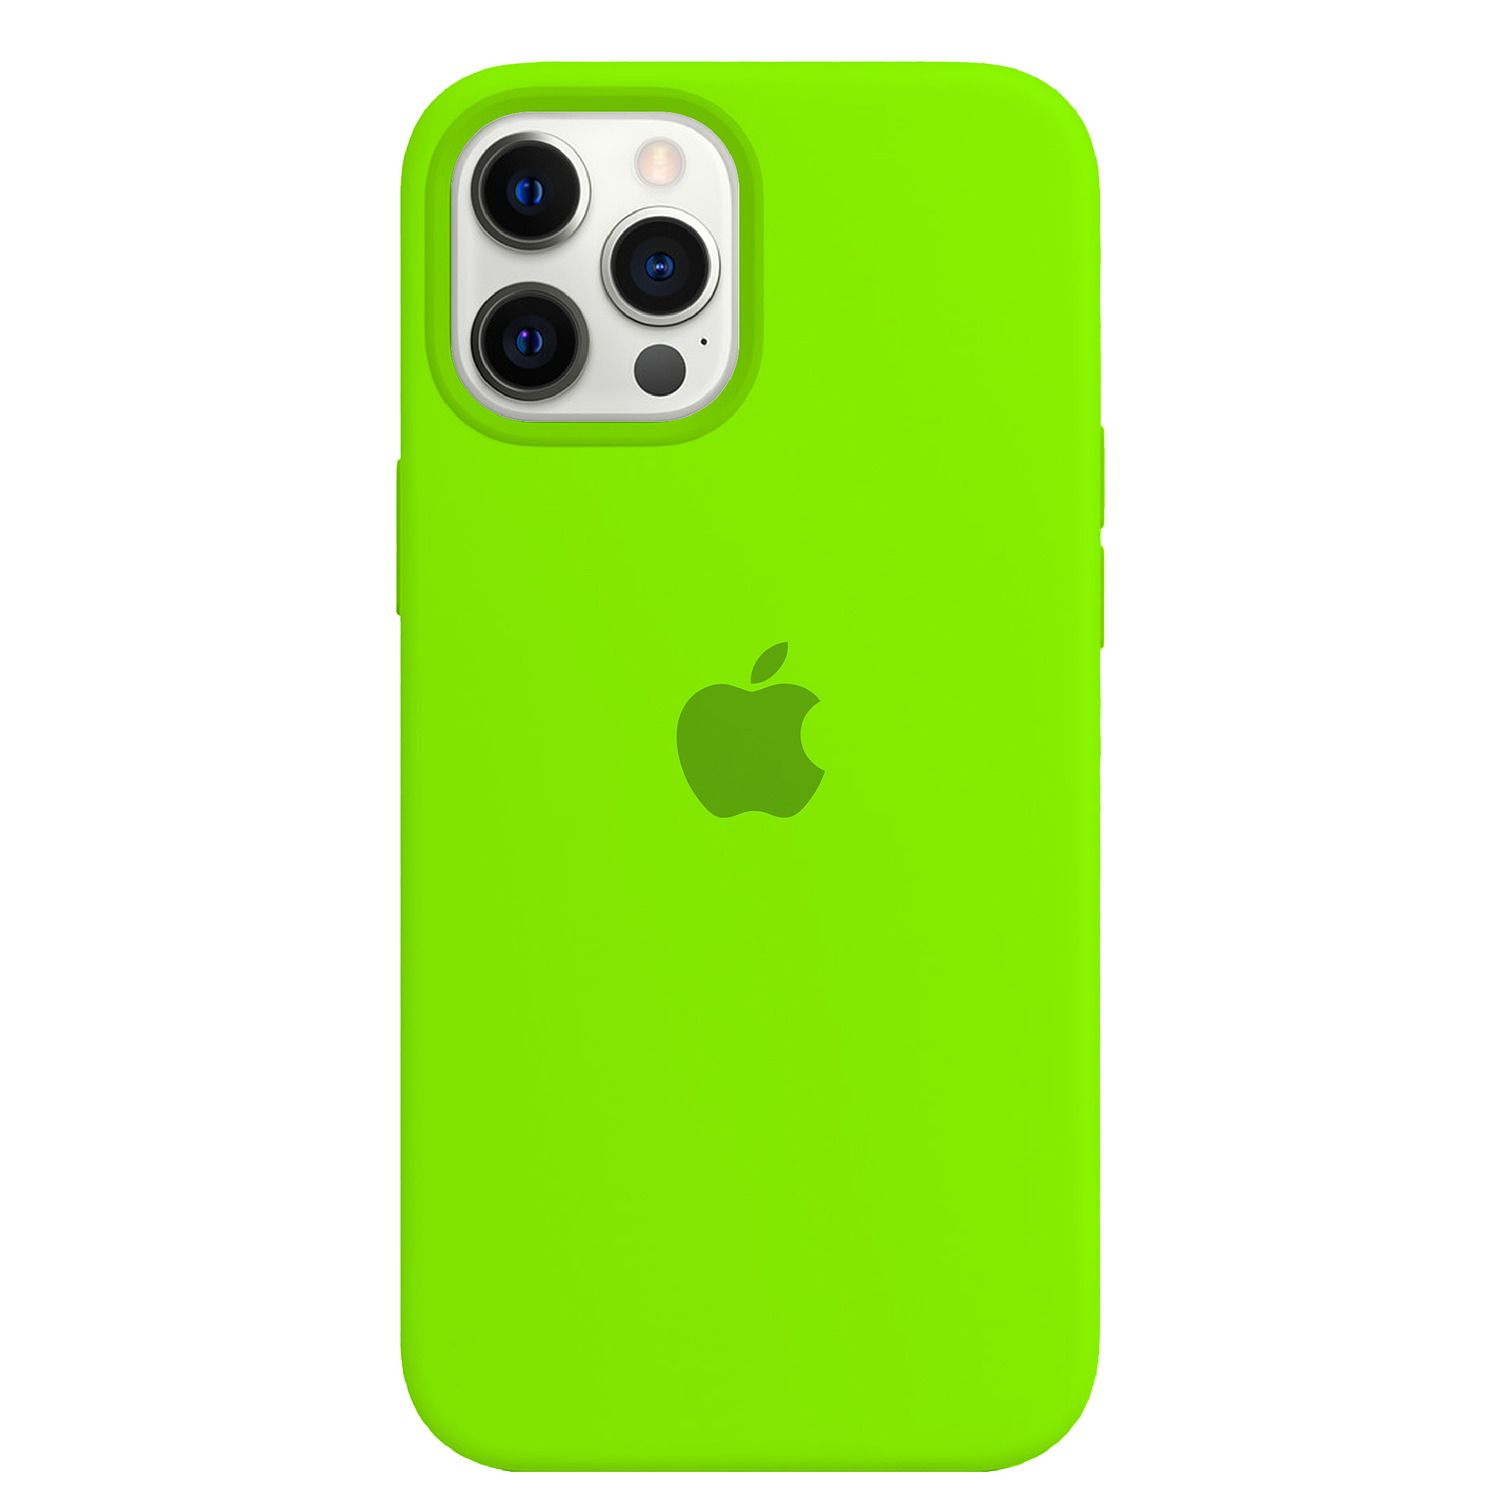 Carcasa de Silicona - iPhone 12 Pro Max 11